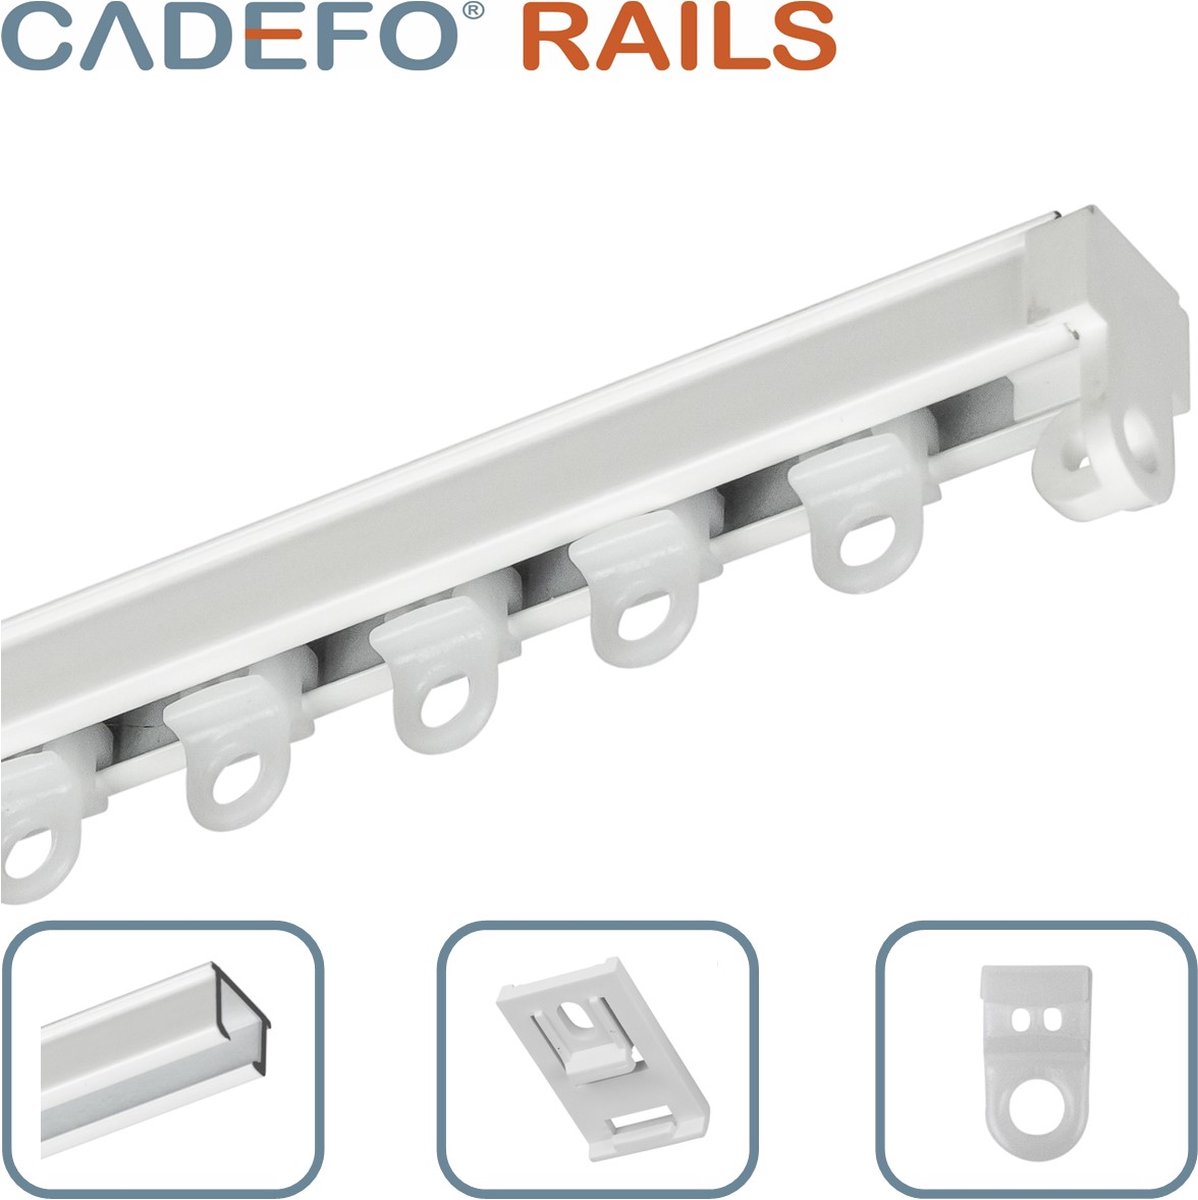 CADEFO RAILS (401 - 450 cm) Gordijnrails - Compleet op maat! - UIT 1 STUK - Leverbaar tot 6 meter - Plafondbevestiging - Lengte 431 cm